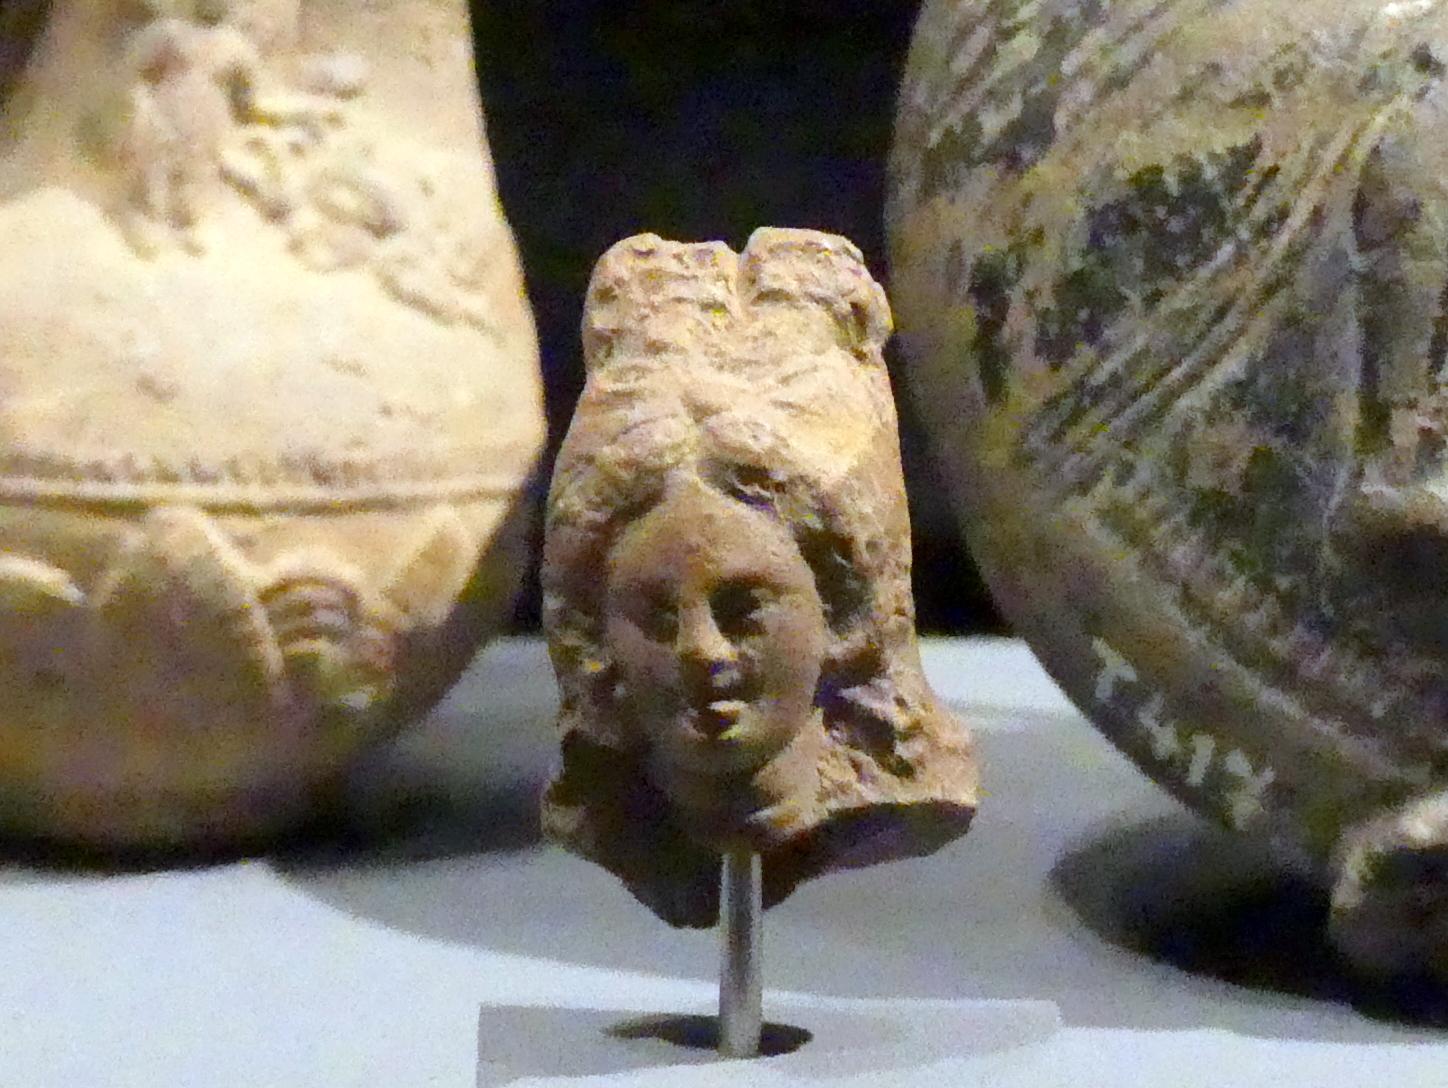 Kopf der Figur einer Göttin, 200 v. Chr. - 200 n. Chr.